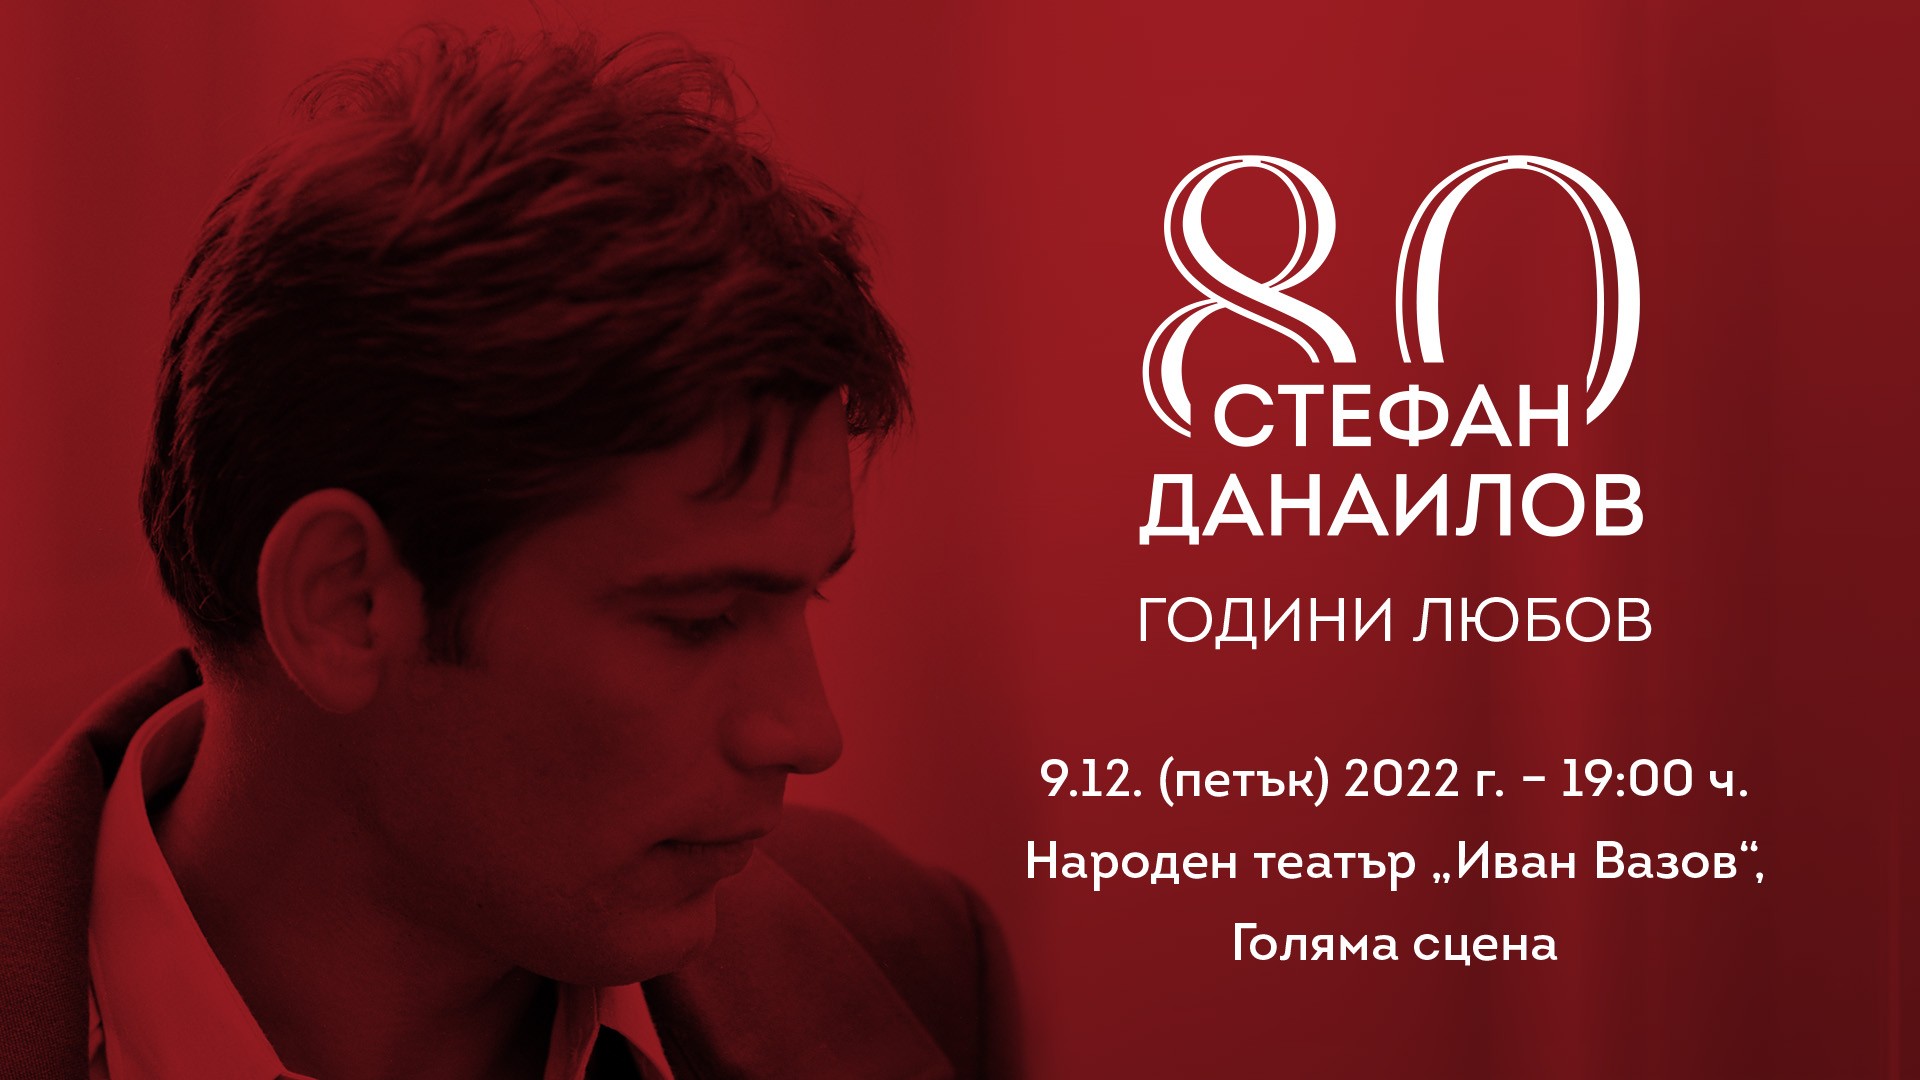 Известни артисти и певци се включват в спектакъла за Стефан  Данаилов 